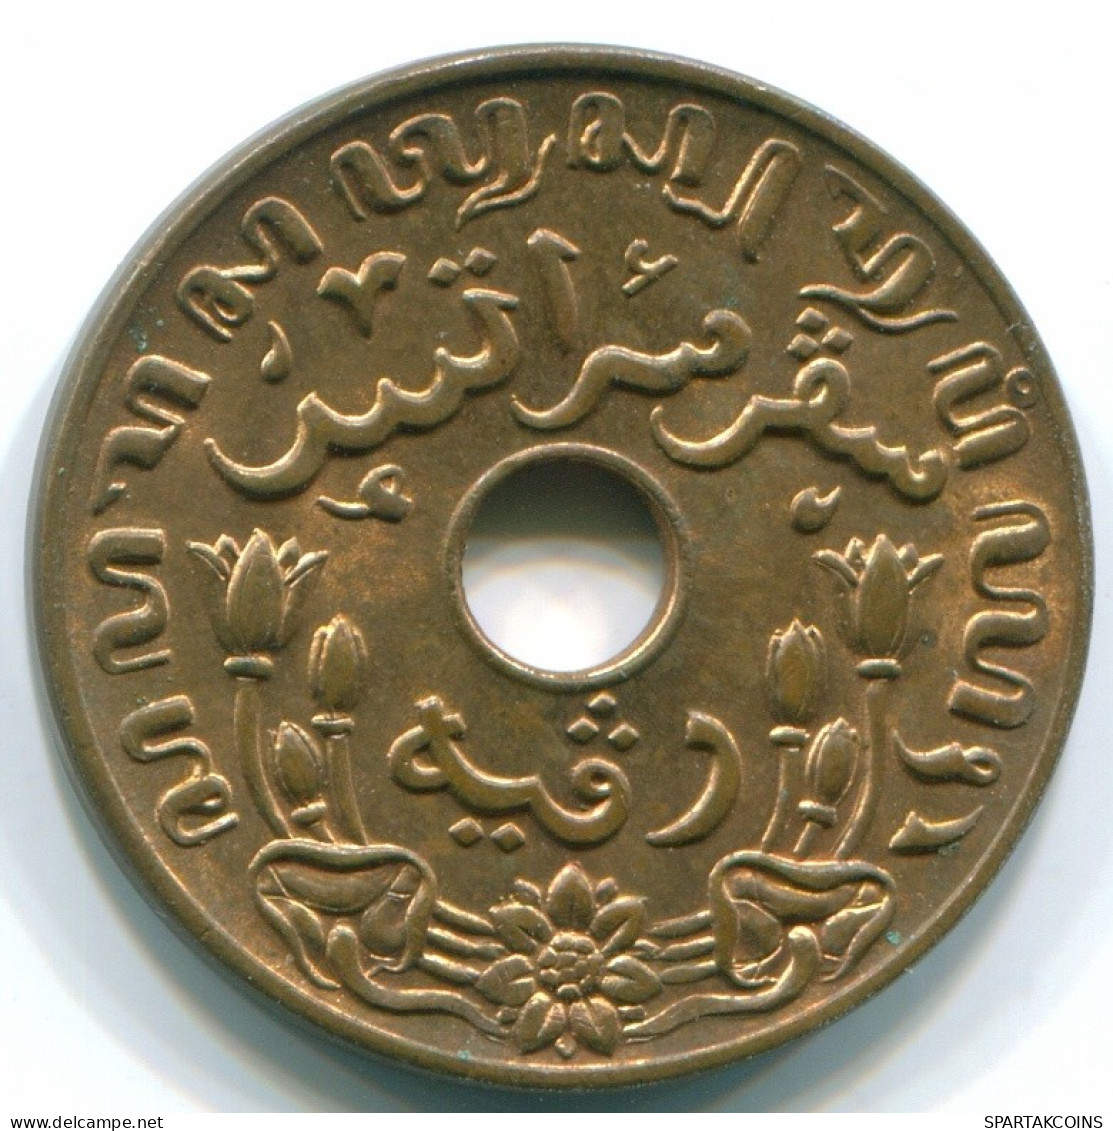 1 CENT 1945 P INDIAS ORIENTALES DE LOS PAÍSES BAJOS INDONESIA Bronze #S10403.E.A - Dutch East Indies